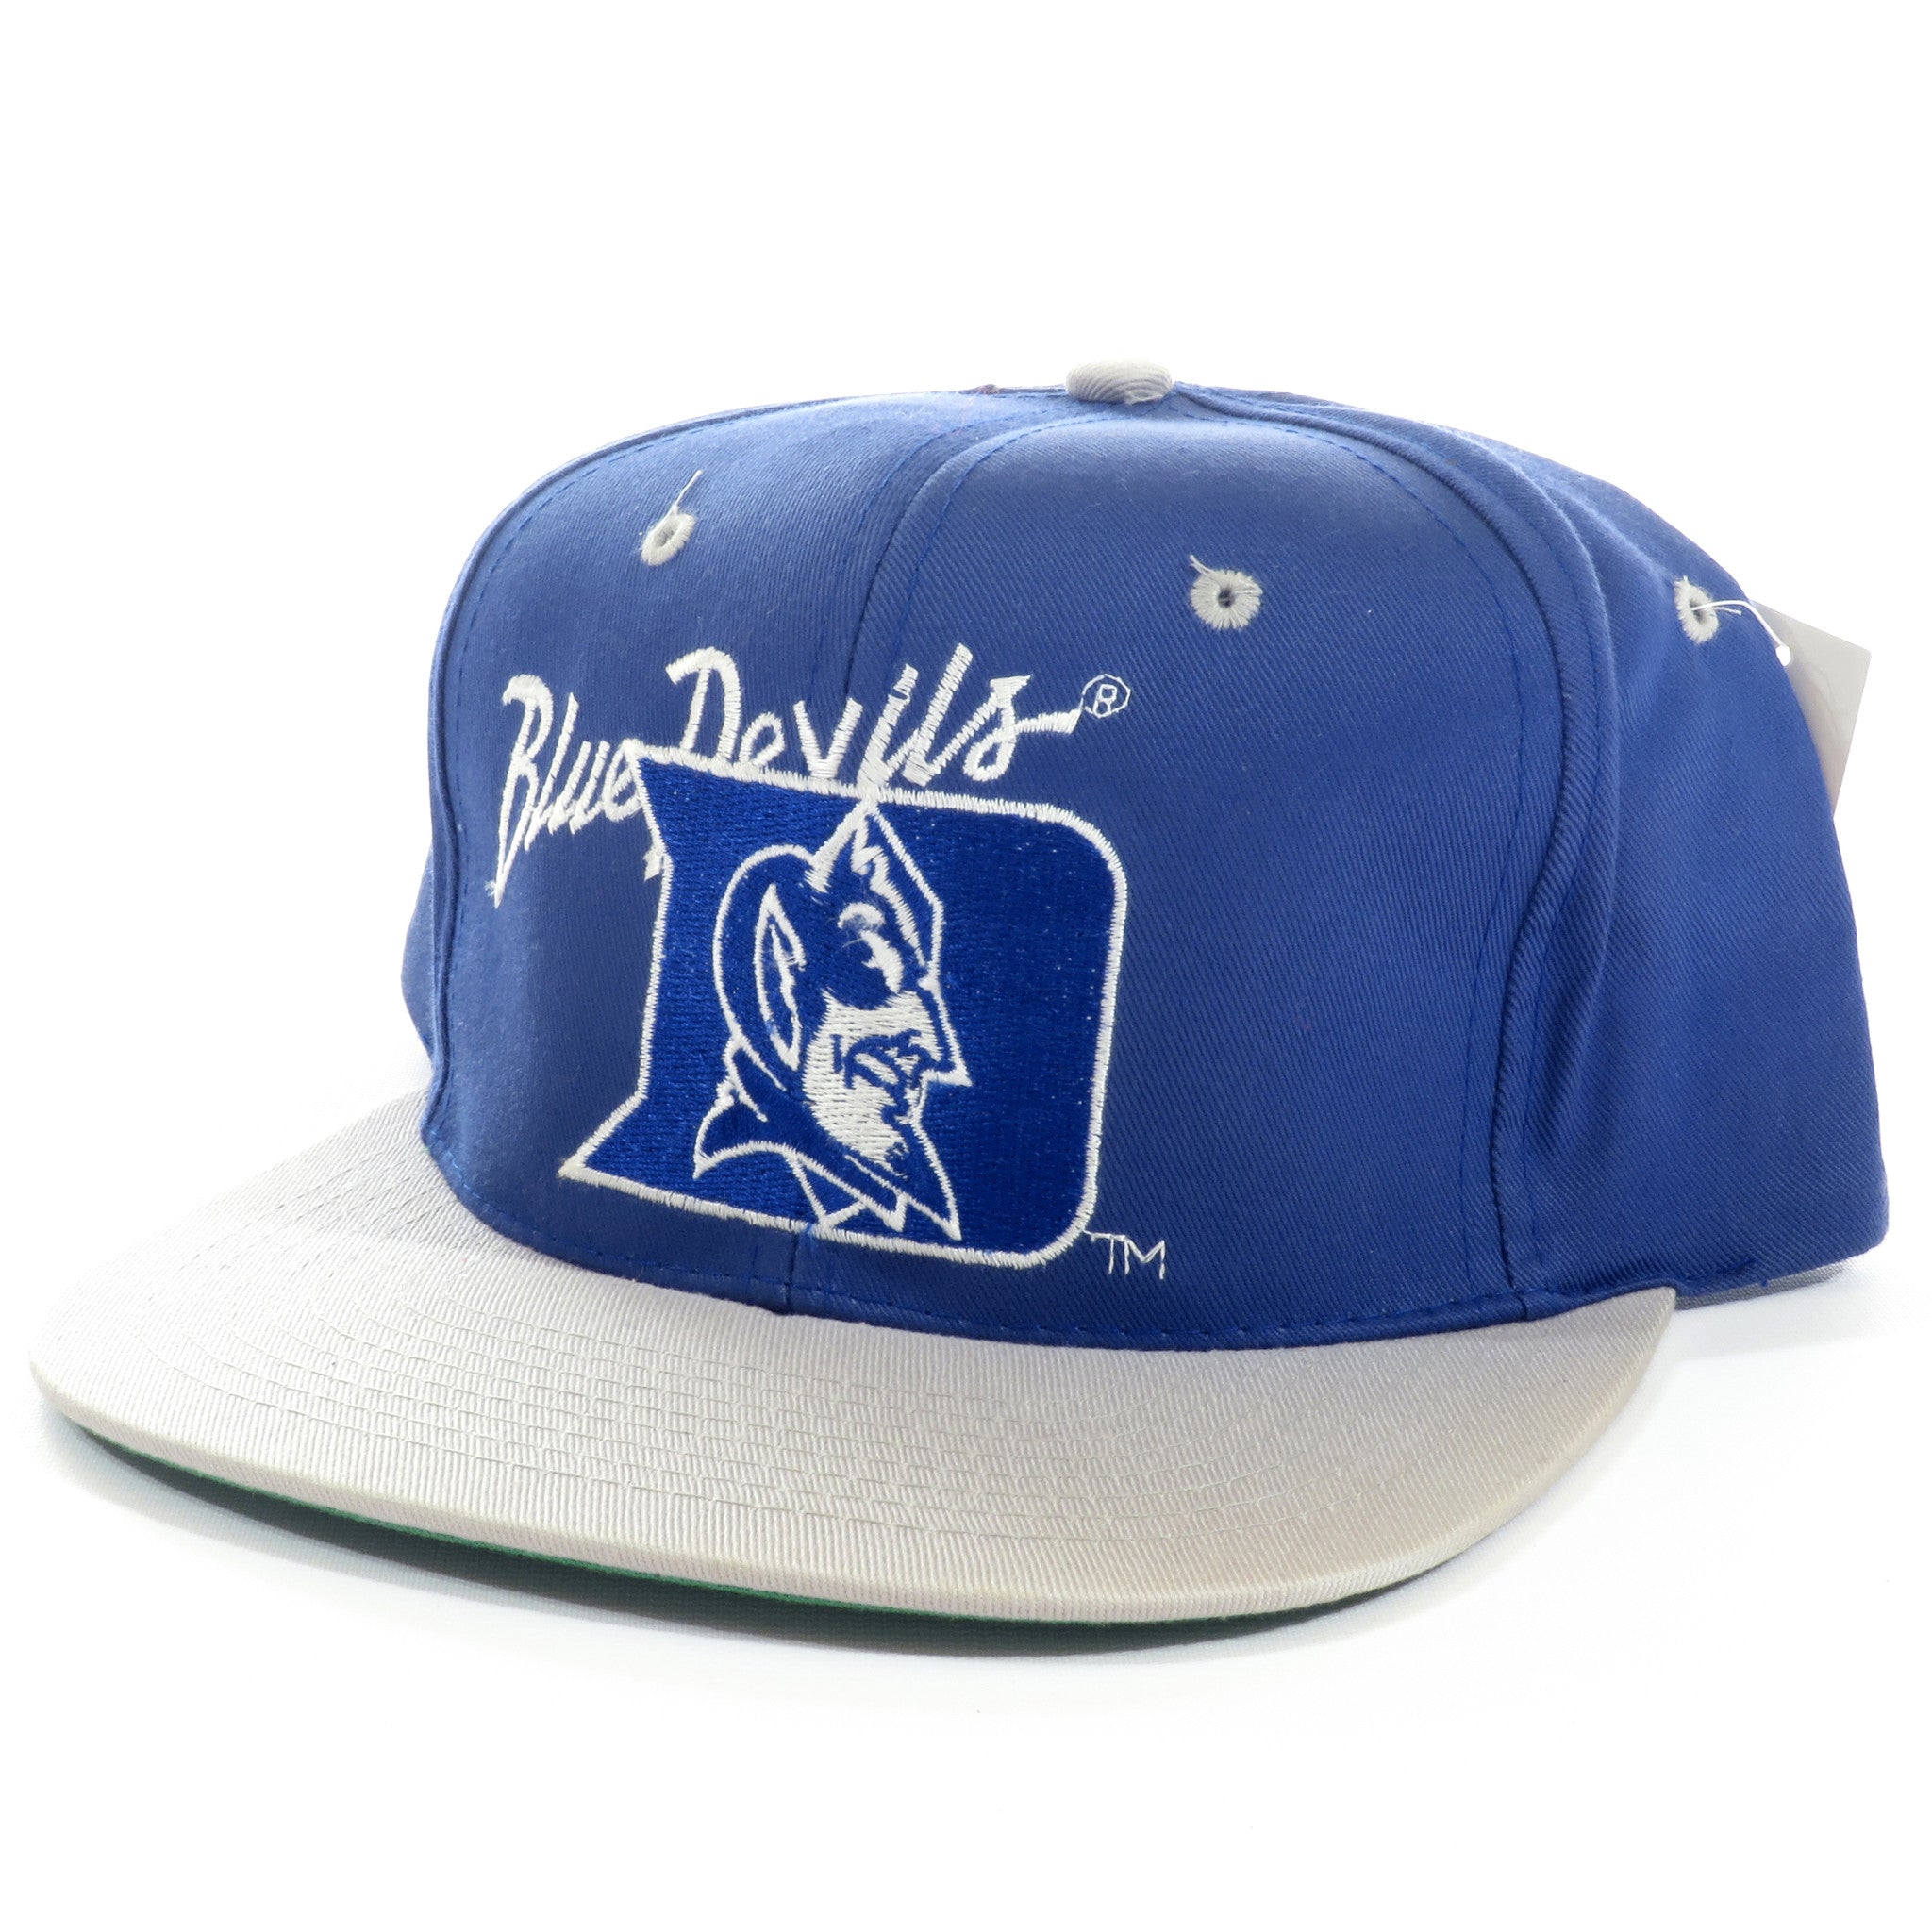 Duke Blue Devils Snapback Hat